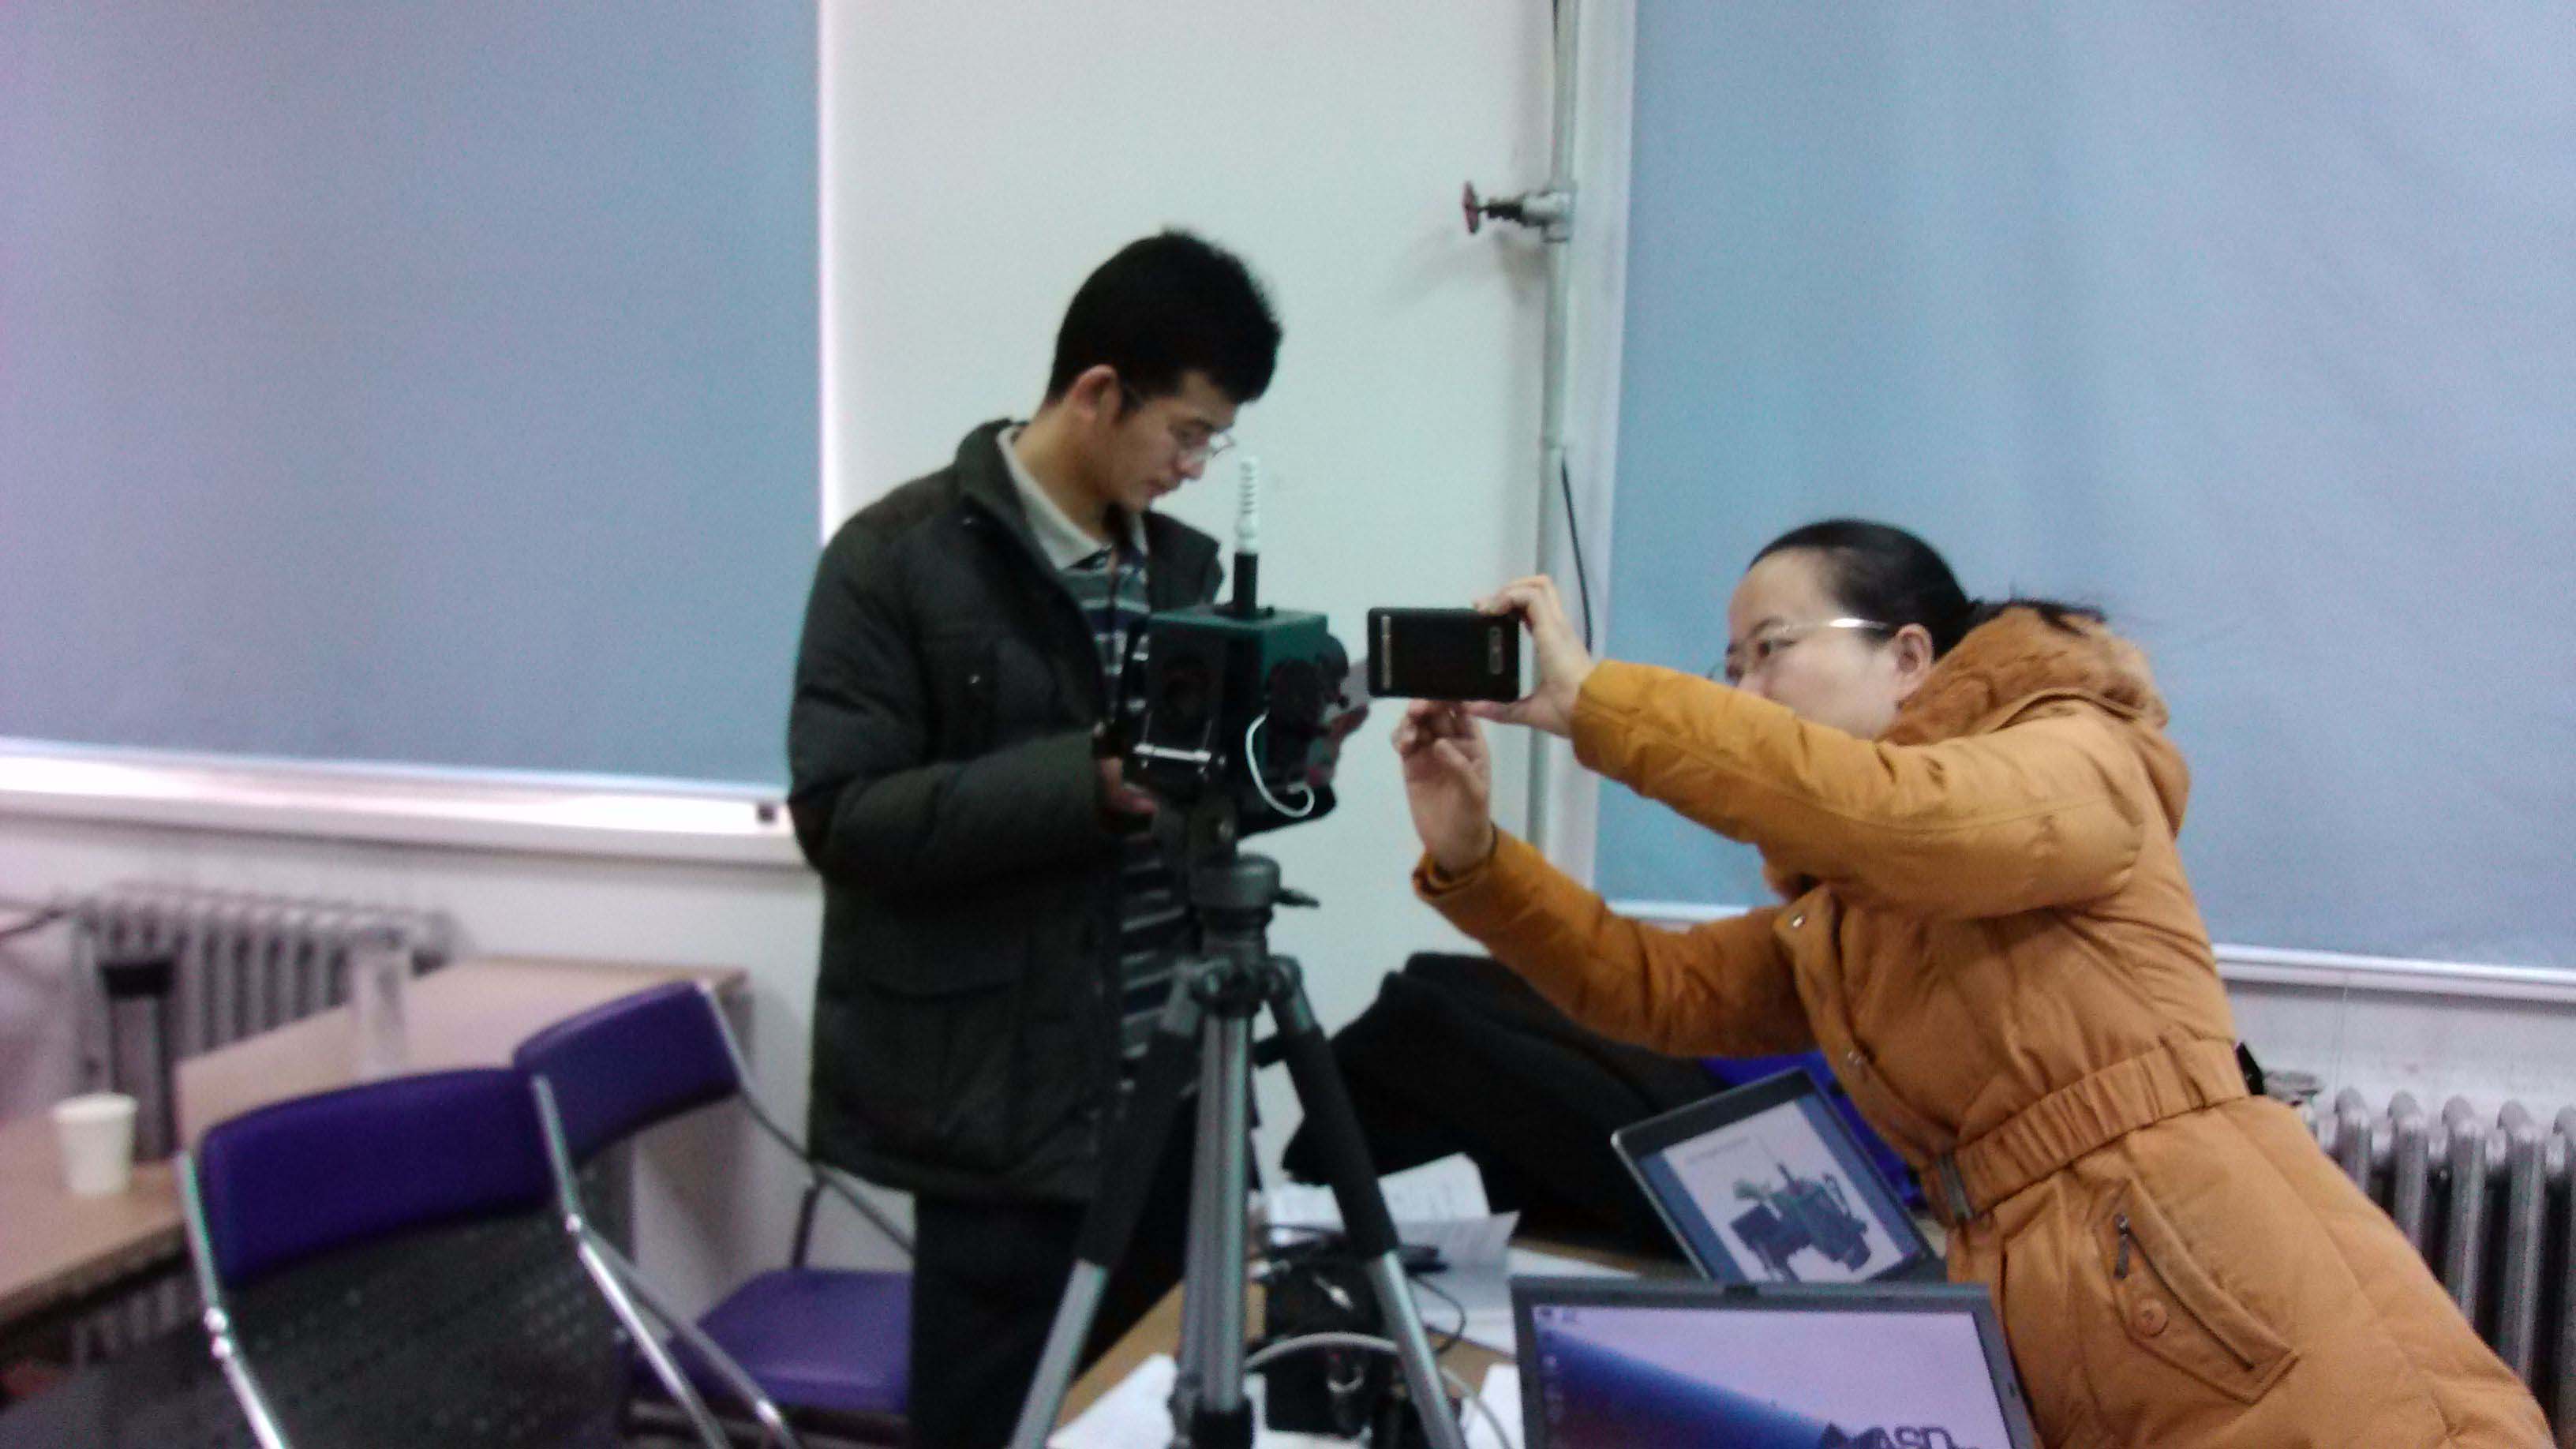 【ASD安装培训】中国气象局兰州干旱气象研究所 便携式地物光谱仪